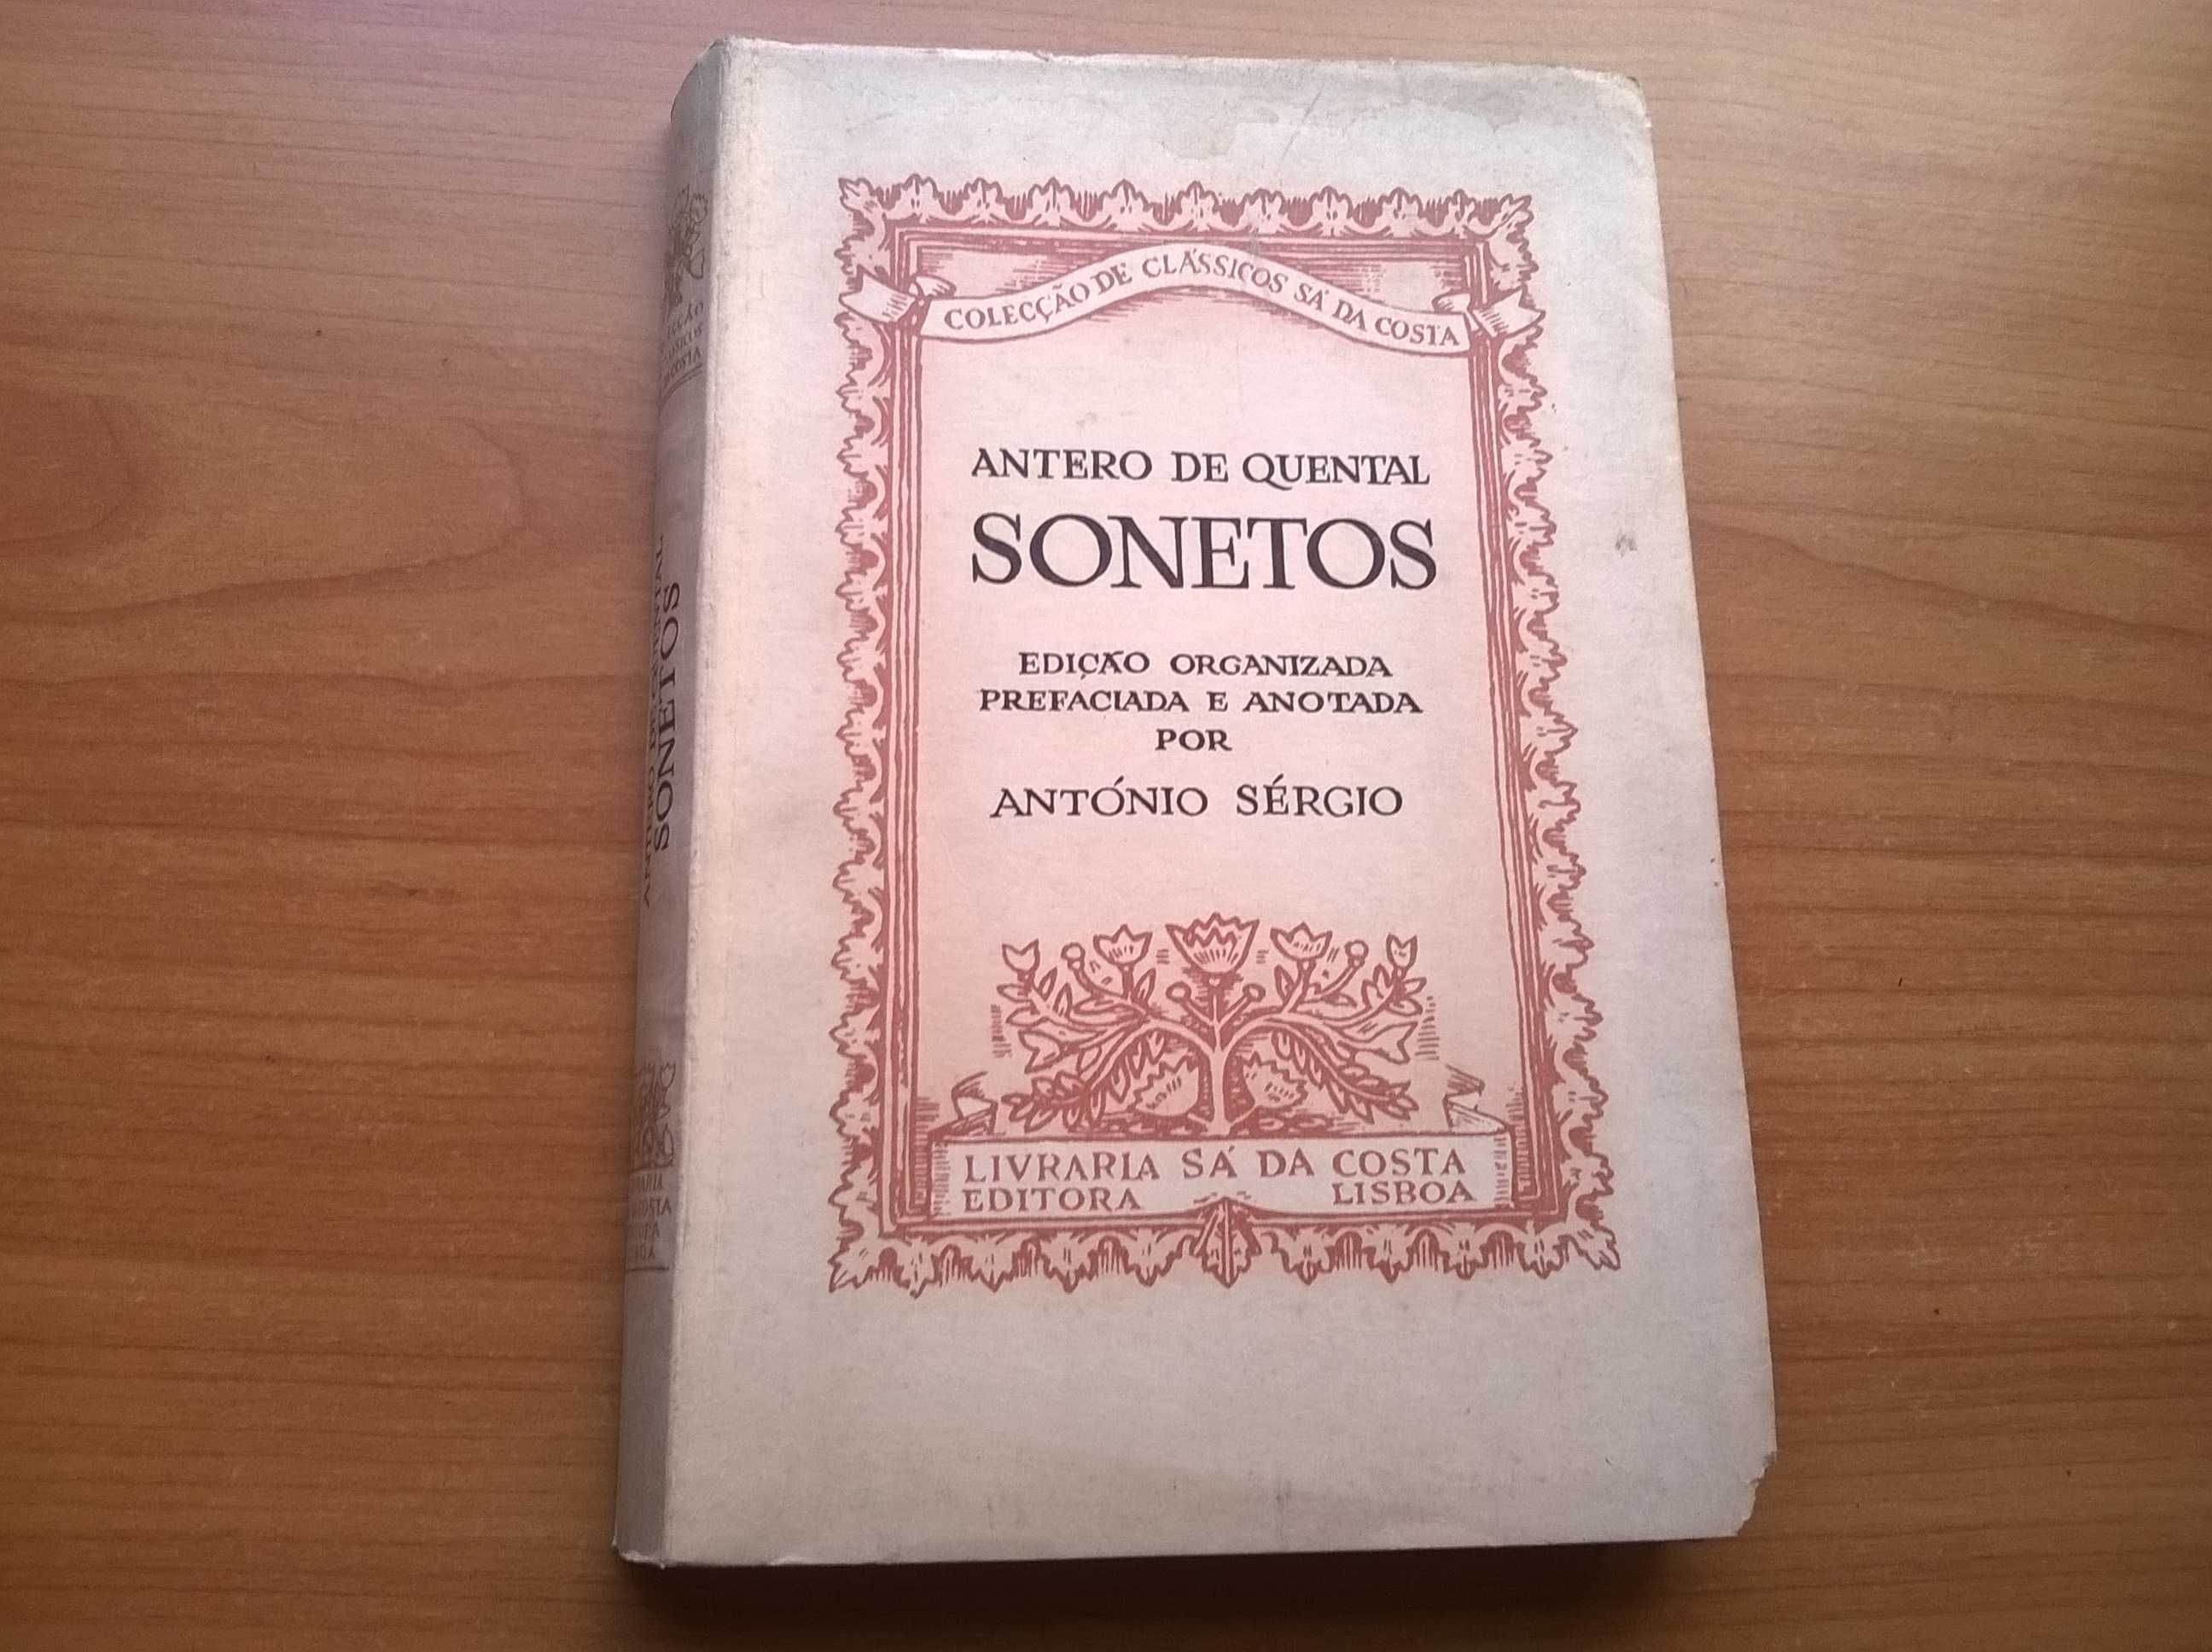 " Sonetos " - Antero de Quental